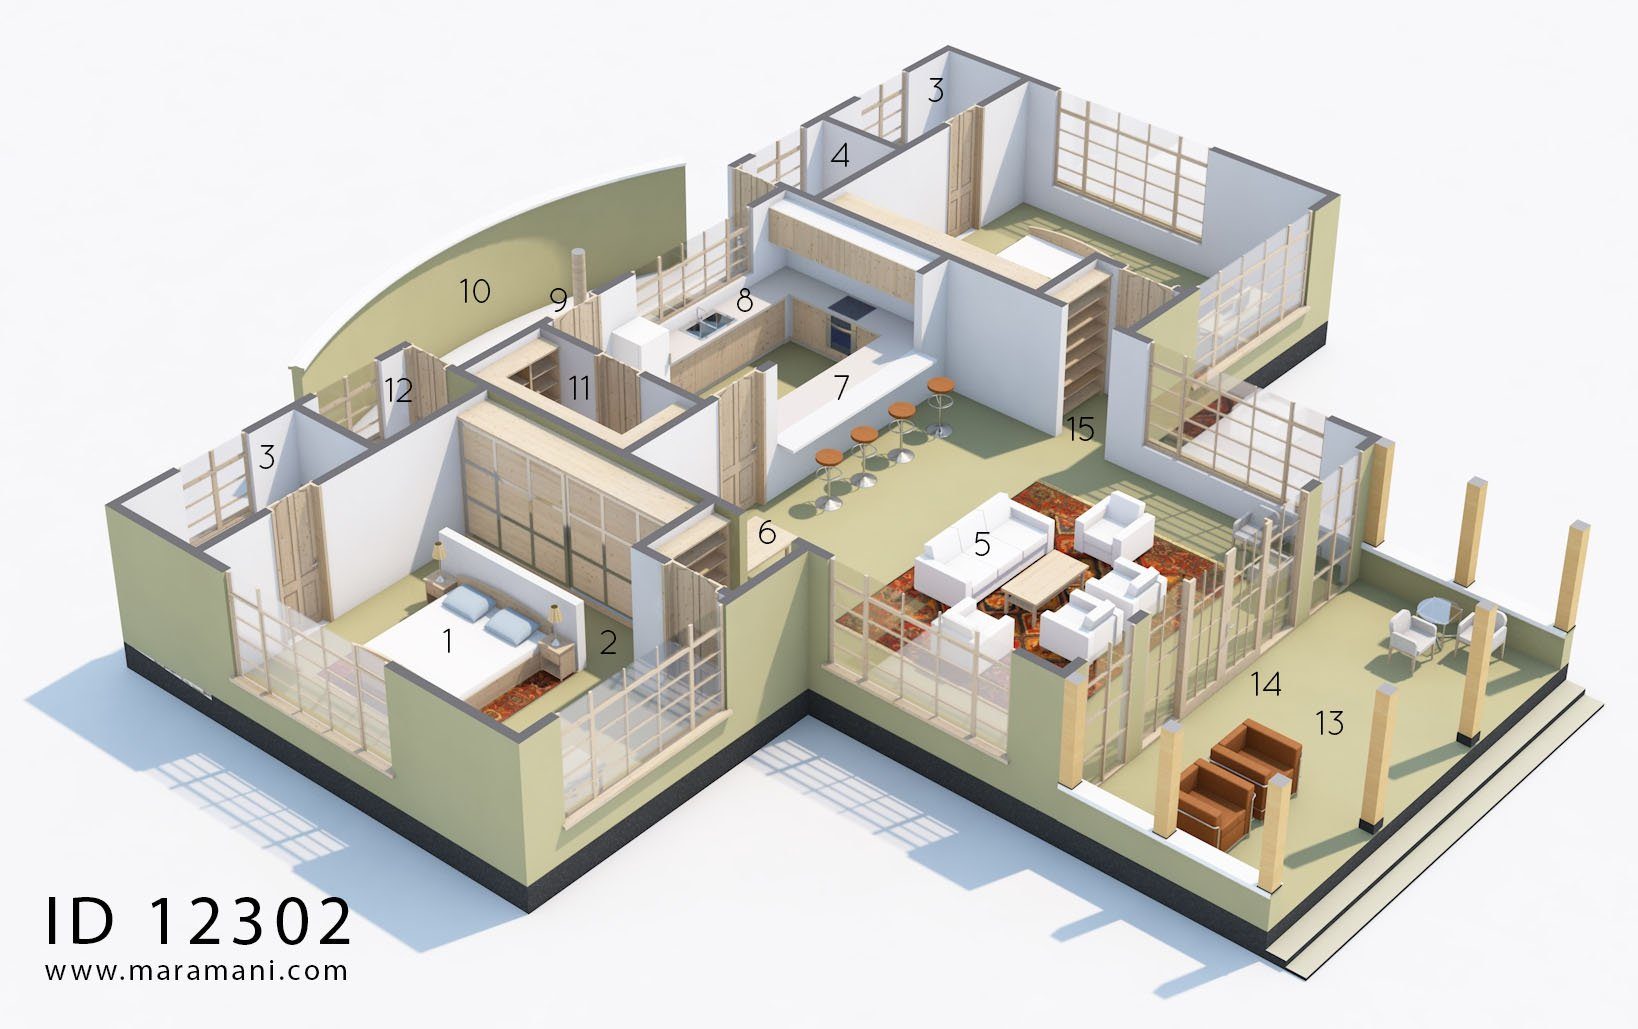 2 Bedroom House Plans Open Floor Plan - Id 12302